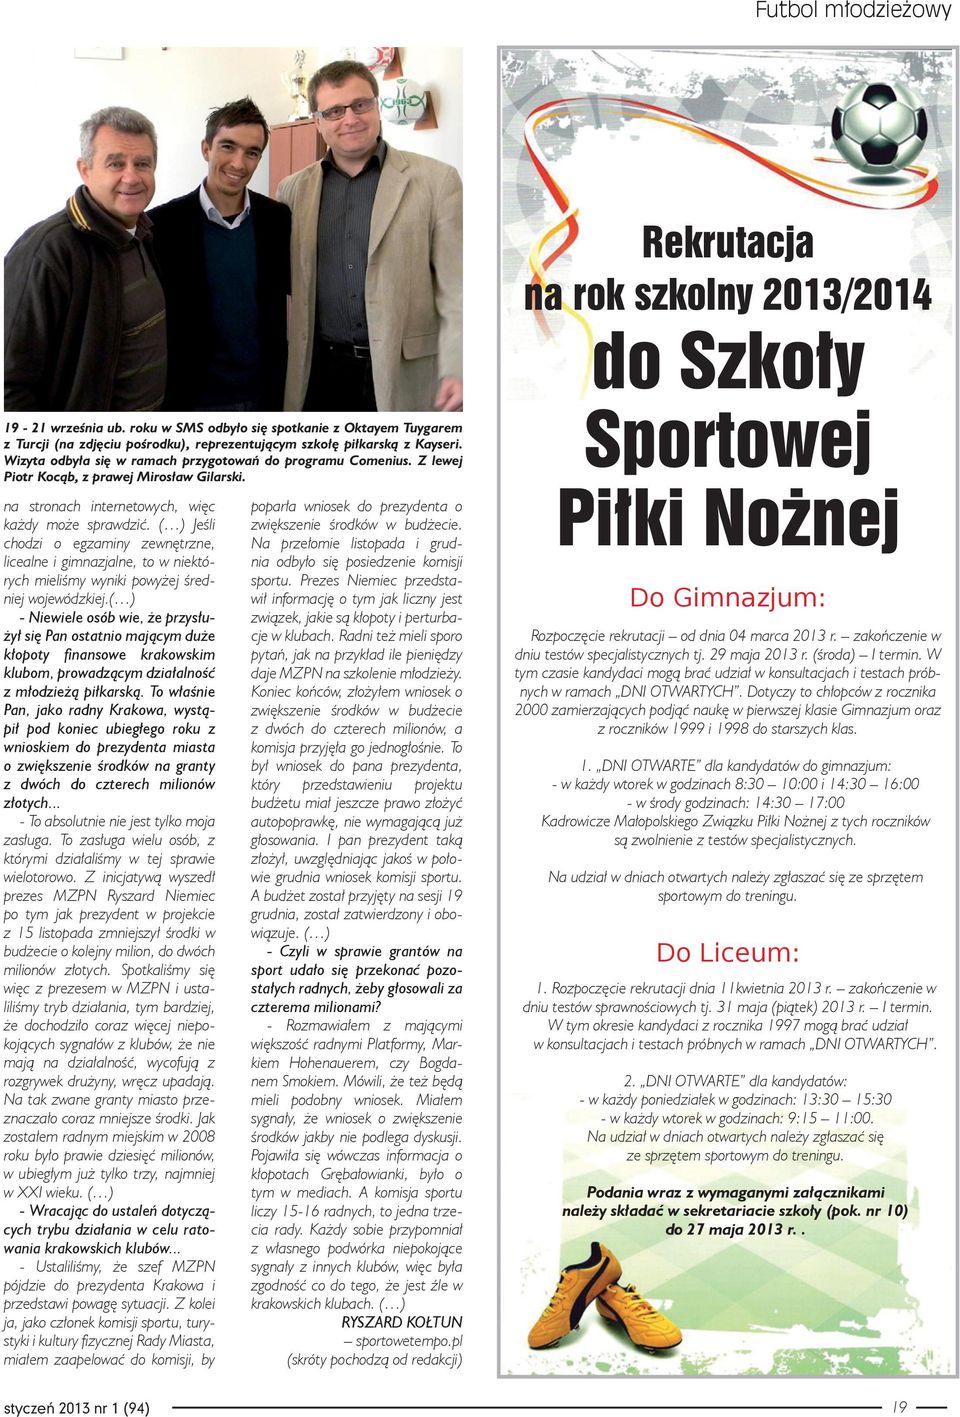 Z lewej Piotr Kocąb, z prawej Mirosław Gilarski. na stronach internetowych, więc każdy może sprawdzić.